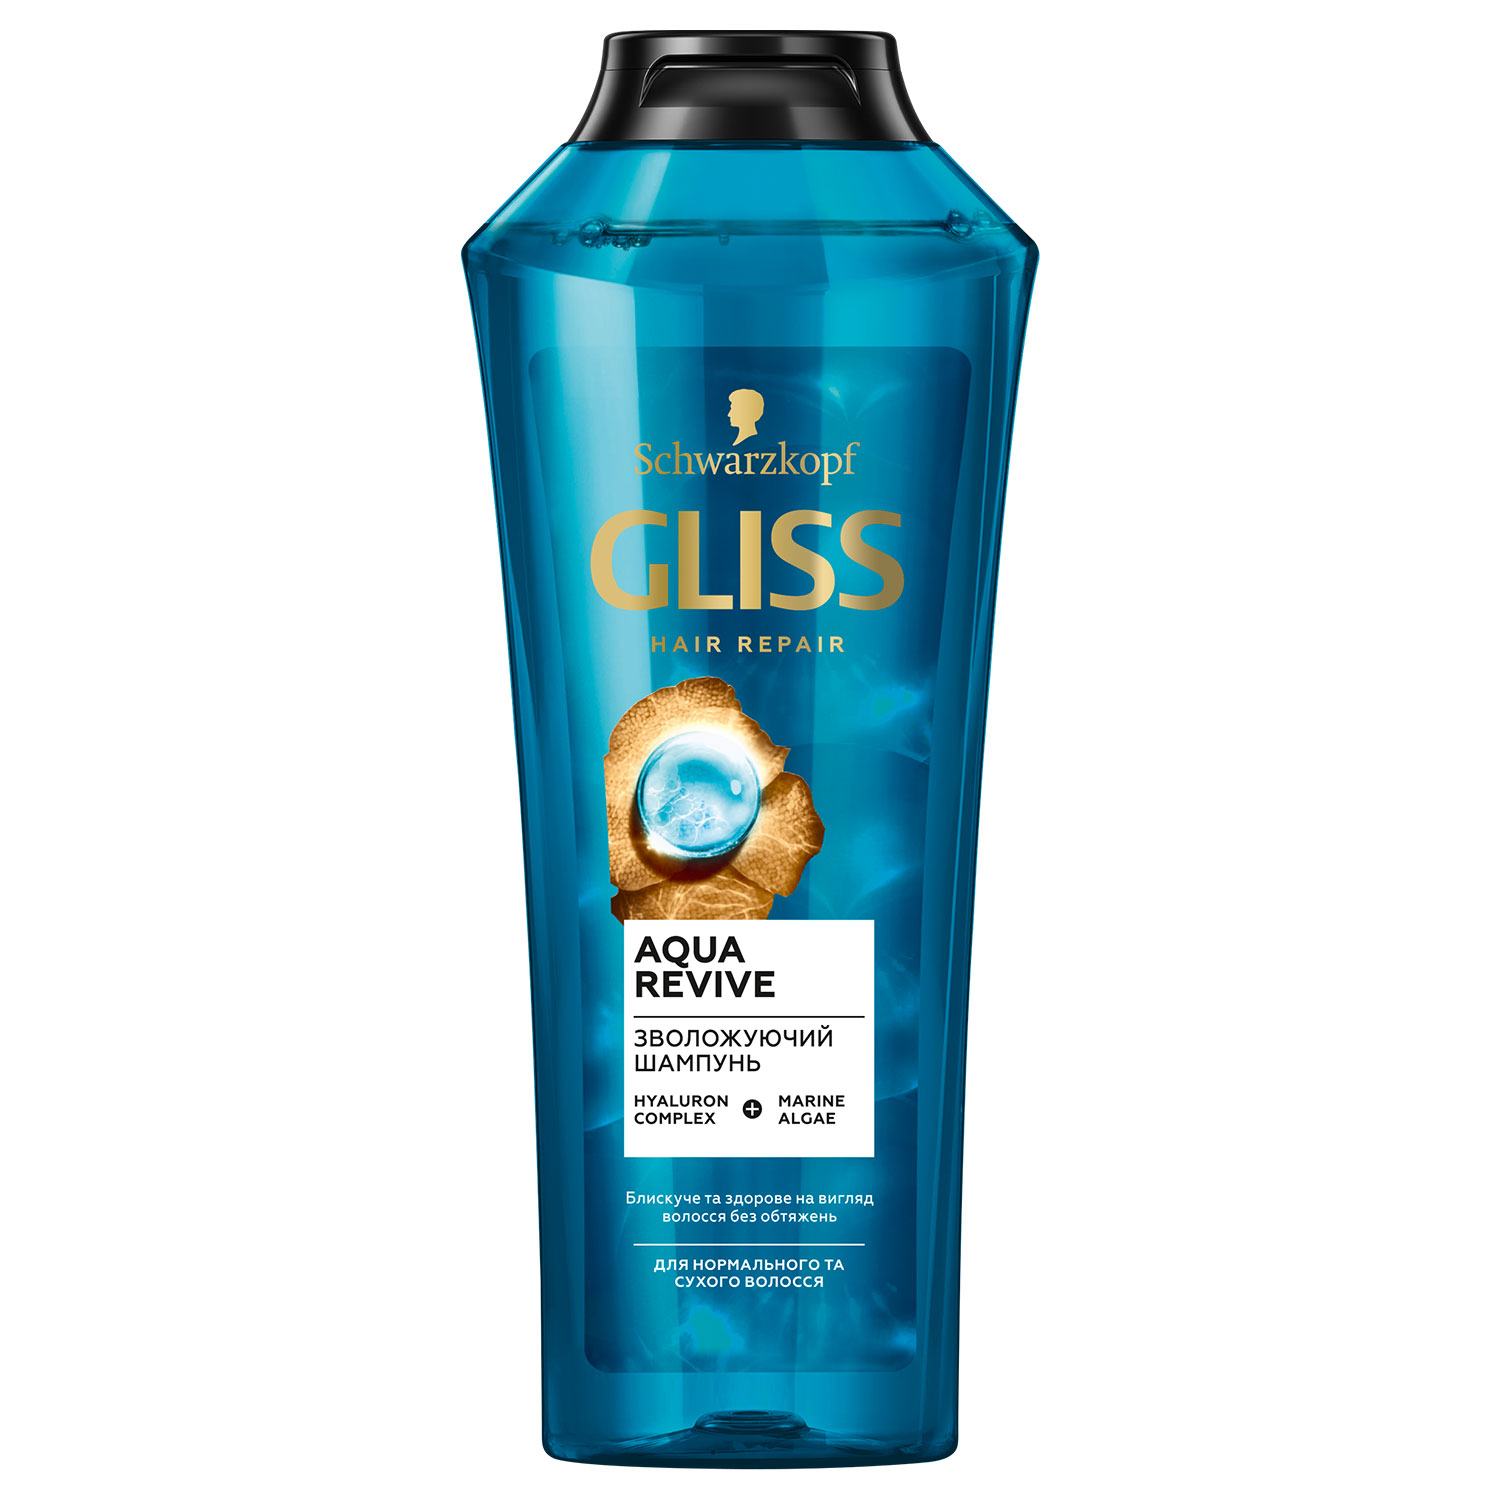 Шампунь GLISS Aqua revive для зволоження сухого та нормального волосся 400 мл